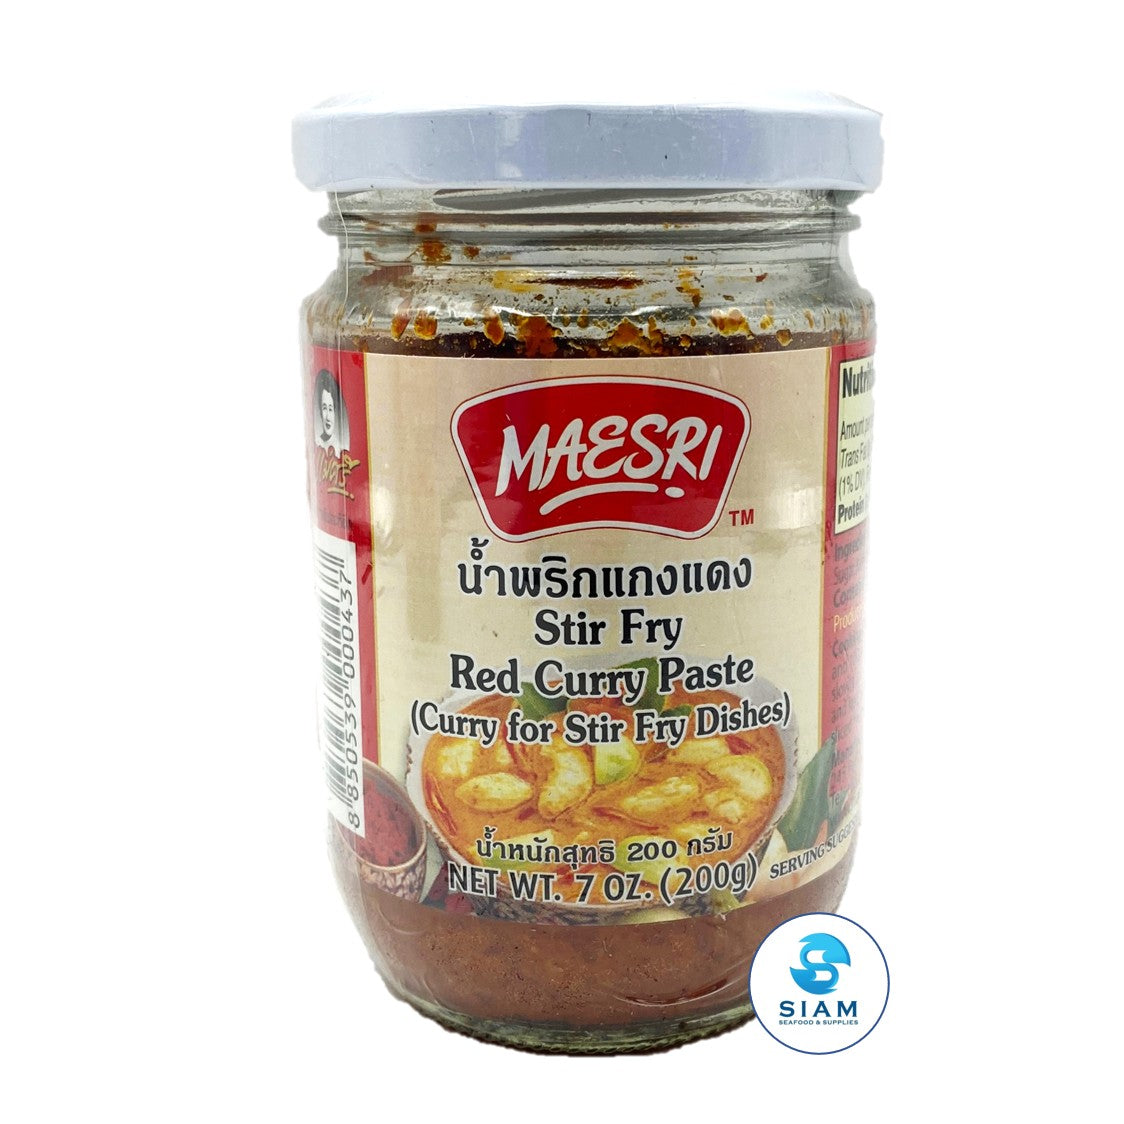 Stir Fry Red Curry Paste - MaeSri (7 oz-Net Wt 13.9 oz) น้ำพริกแกงแดง (สำหรับจานผัด) แม่ศรี shippable MaeSri